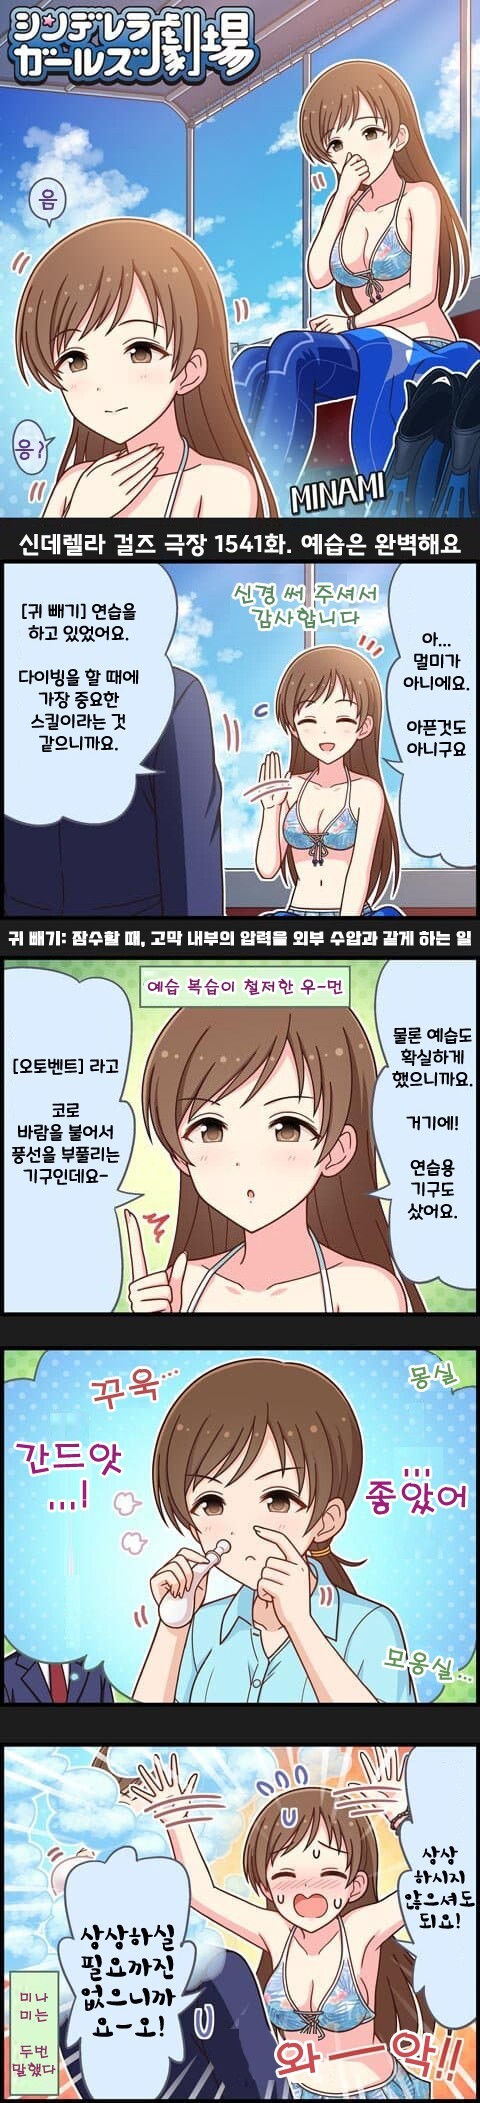 예습 착실히 하는 닛타 미나미 만화